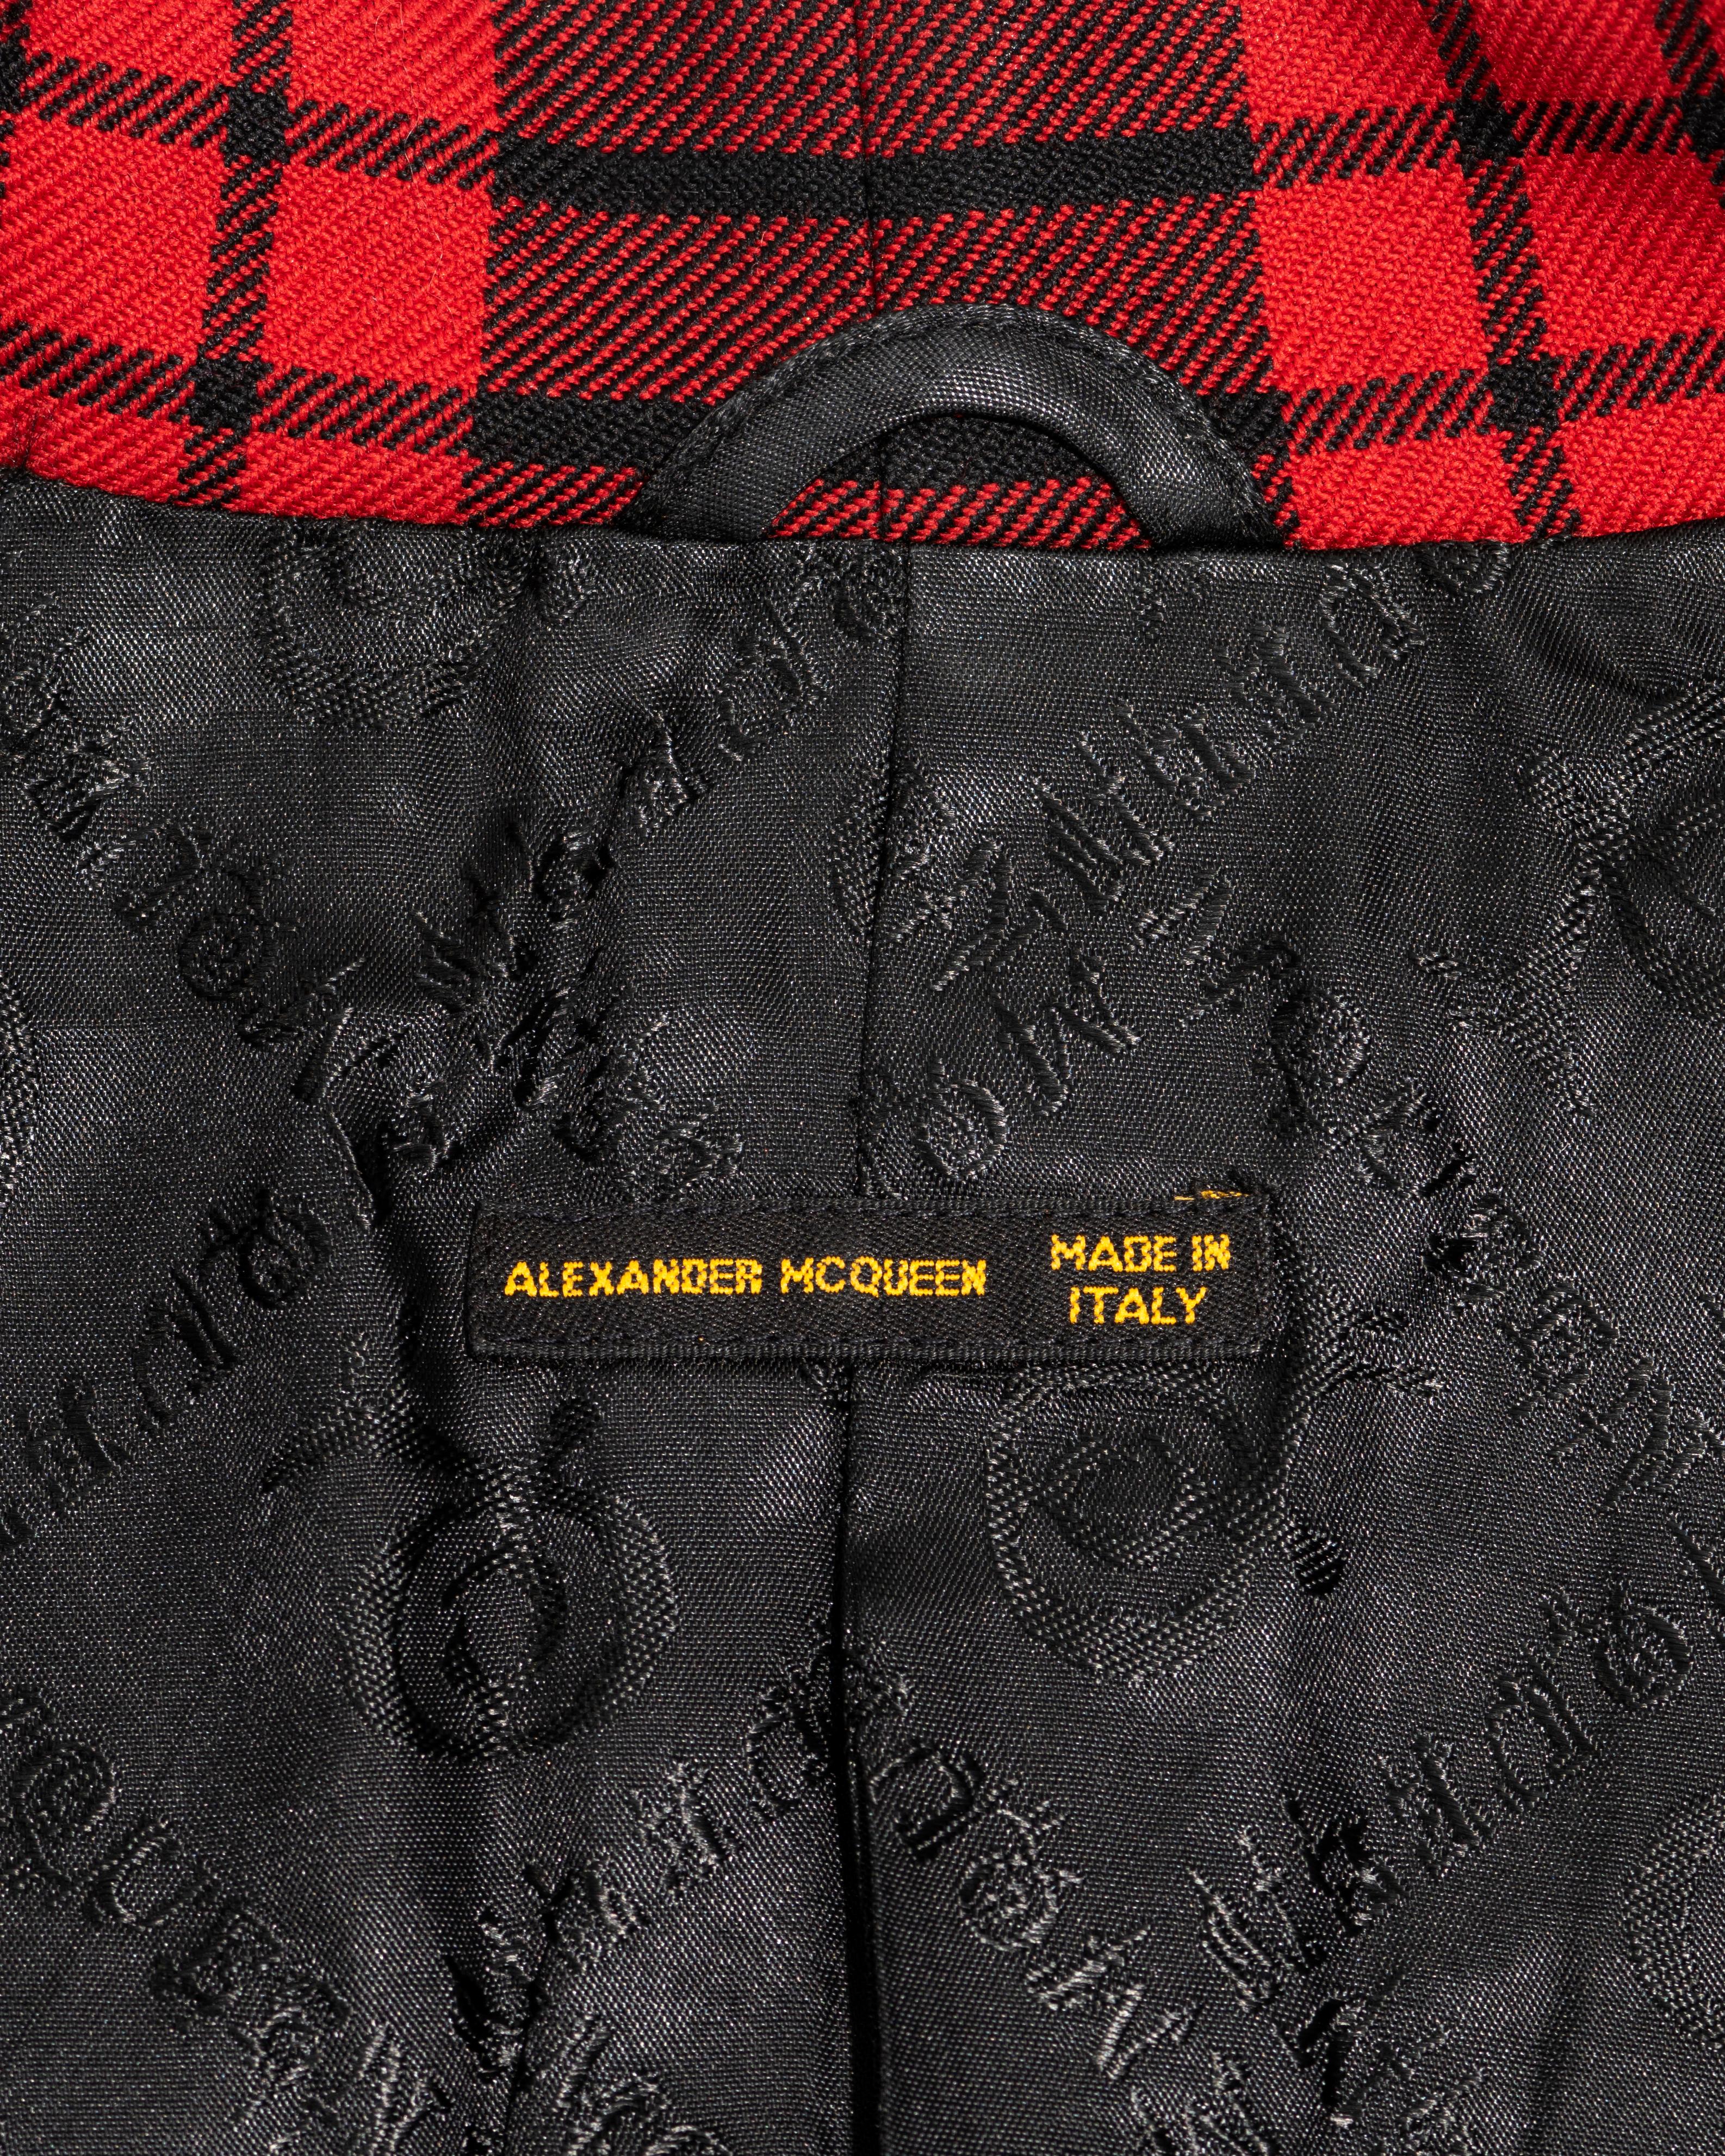 Alexander McQueen red tartan wool 'Joan' jacket, fw 1998 3